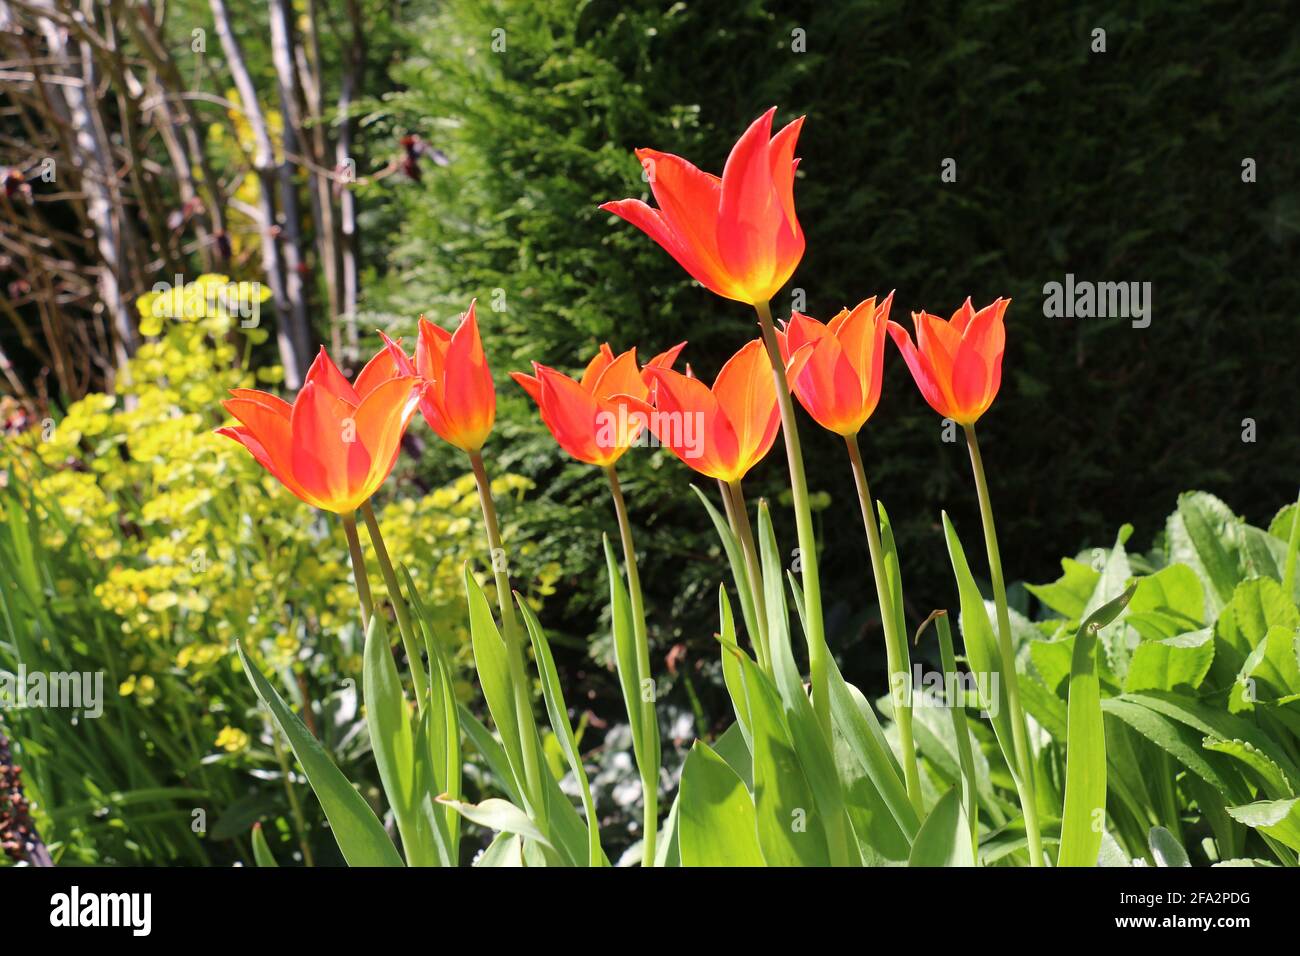 Fleurs de tulipe orange vif, Tulipa ballerina, tulipe à fleurs de nénuphars, floraison au printemps, Shropshire UK Banque D'Images